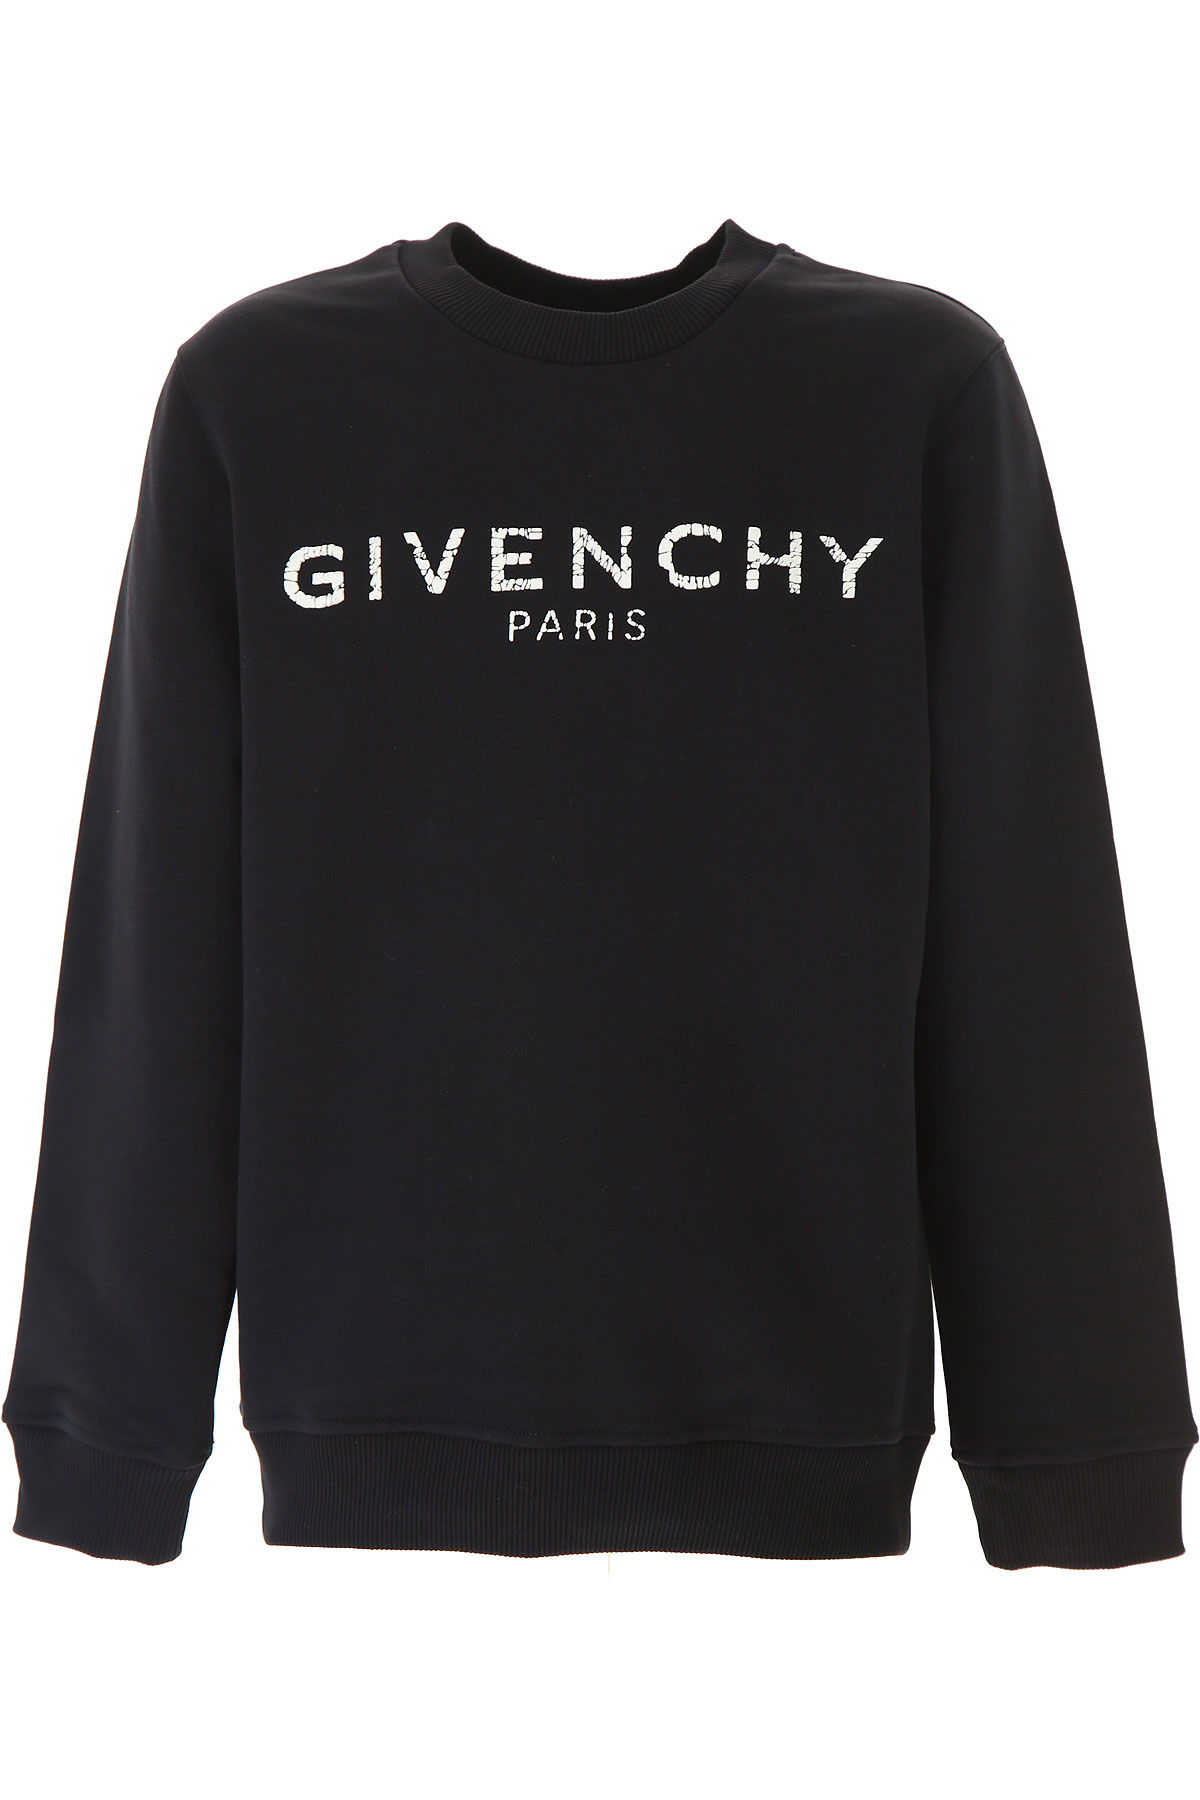 Givenchy Kinder Sweatshirt & Kapuzenpullover für Jungen Günstig im Sale, Schwarz, Baumwolle, 2017, 10Y 4Y 8Y